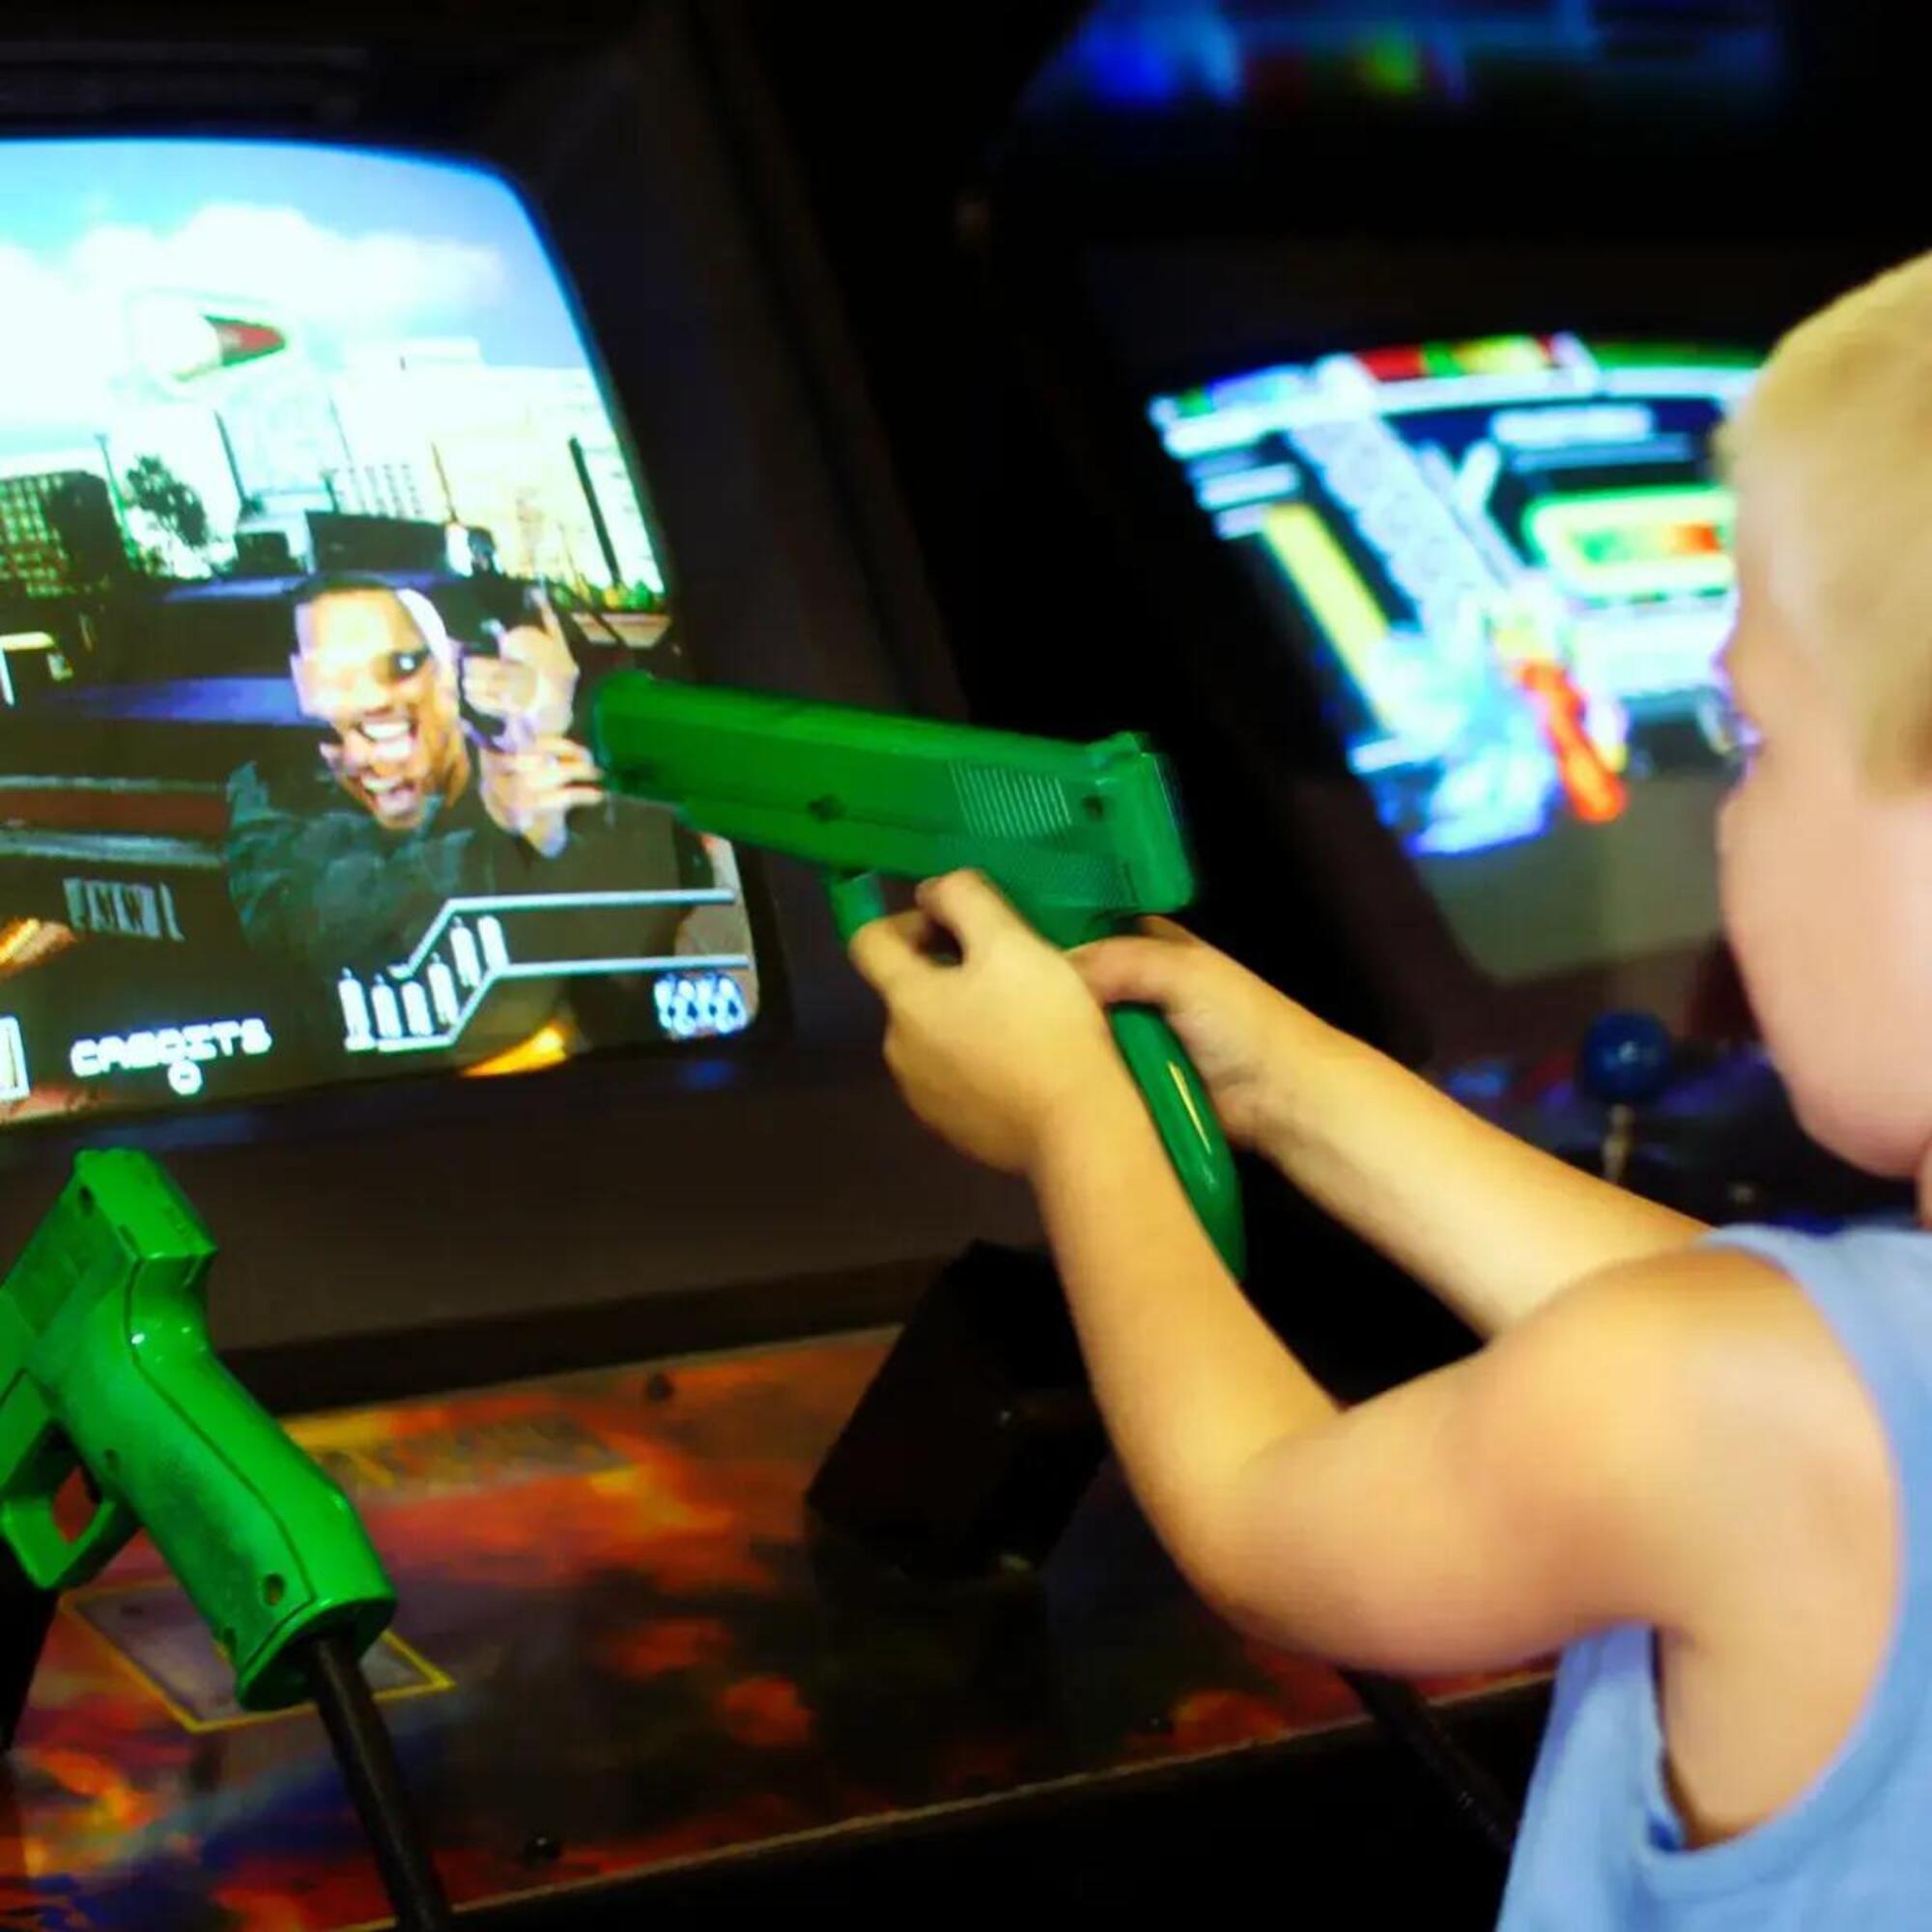 Fino a qualche anno fa si riteneva che i videogiochi violenti rendessero i bambini pi&ugrave; aggressivi